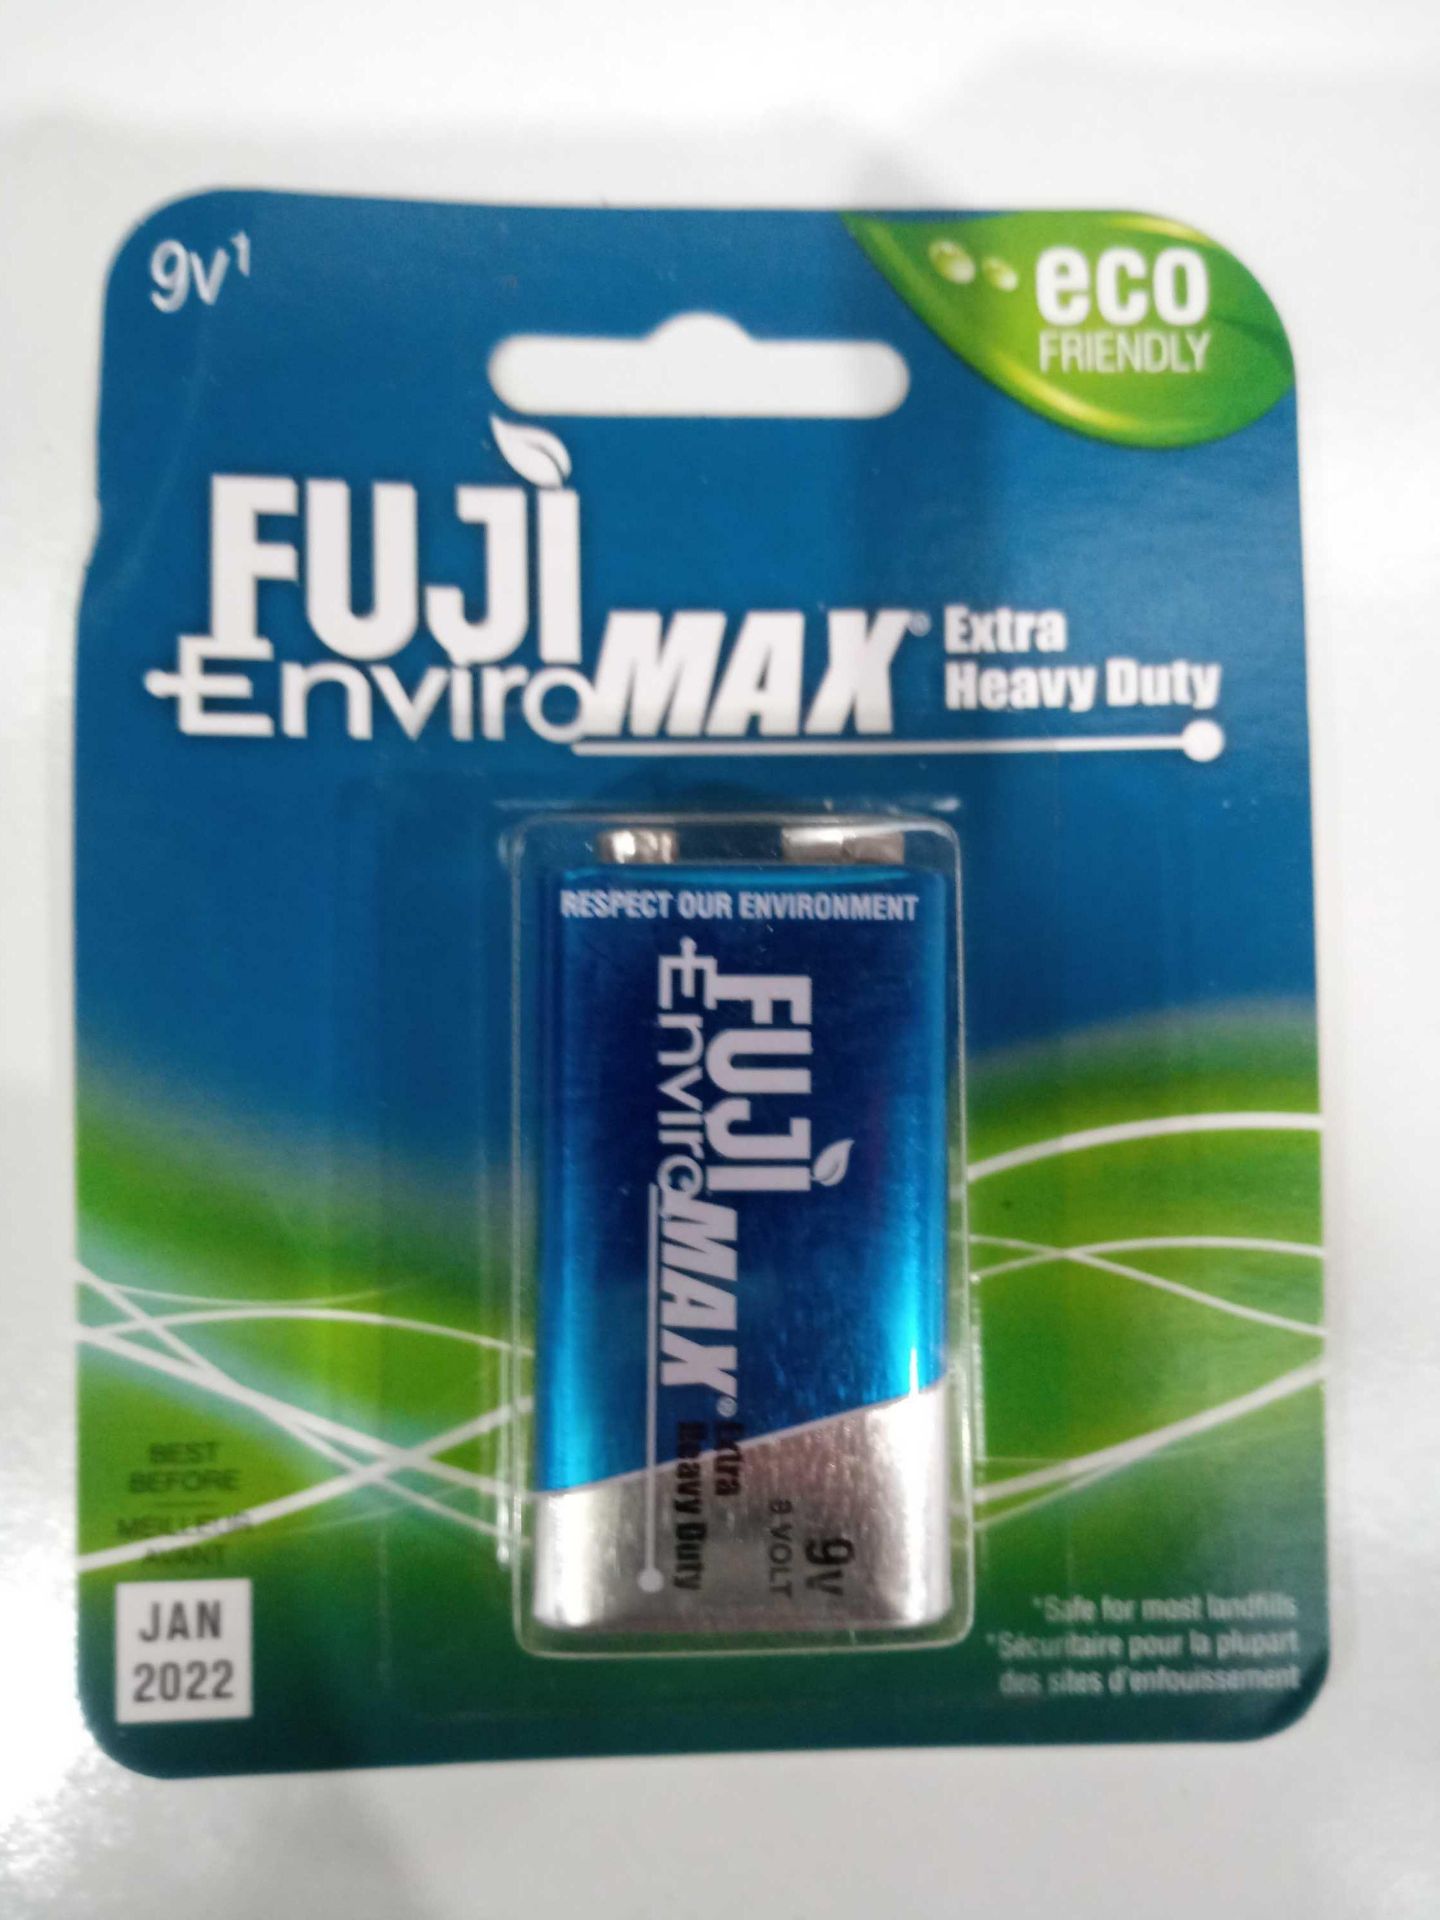 Fuji Enviro Max Extra Heavy Duty Batteries